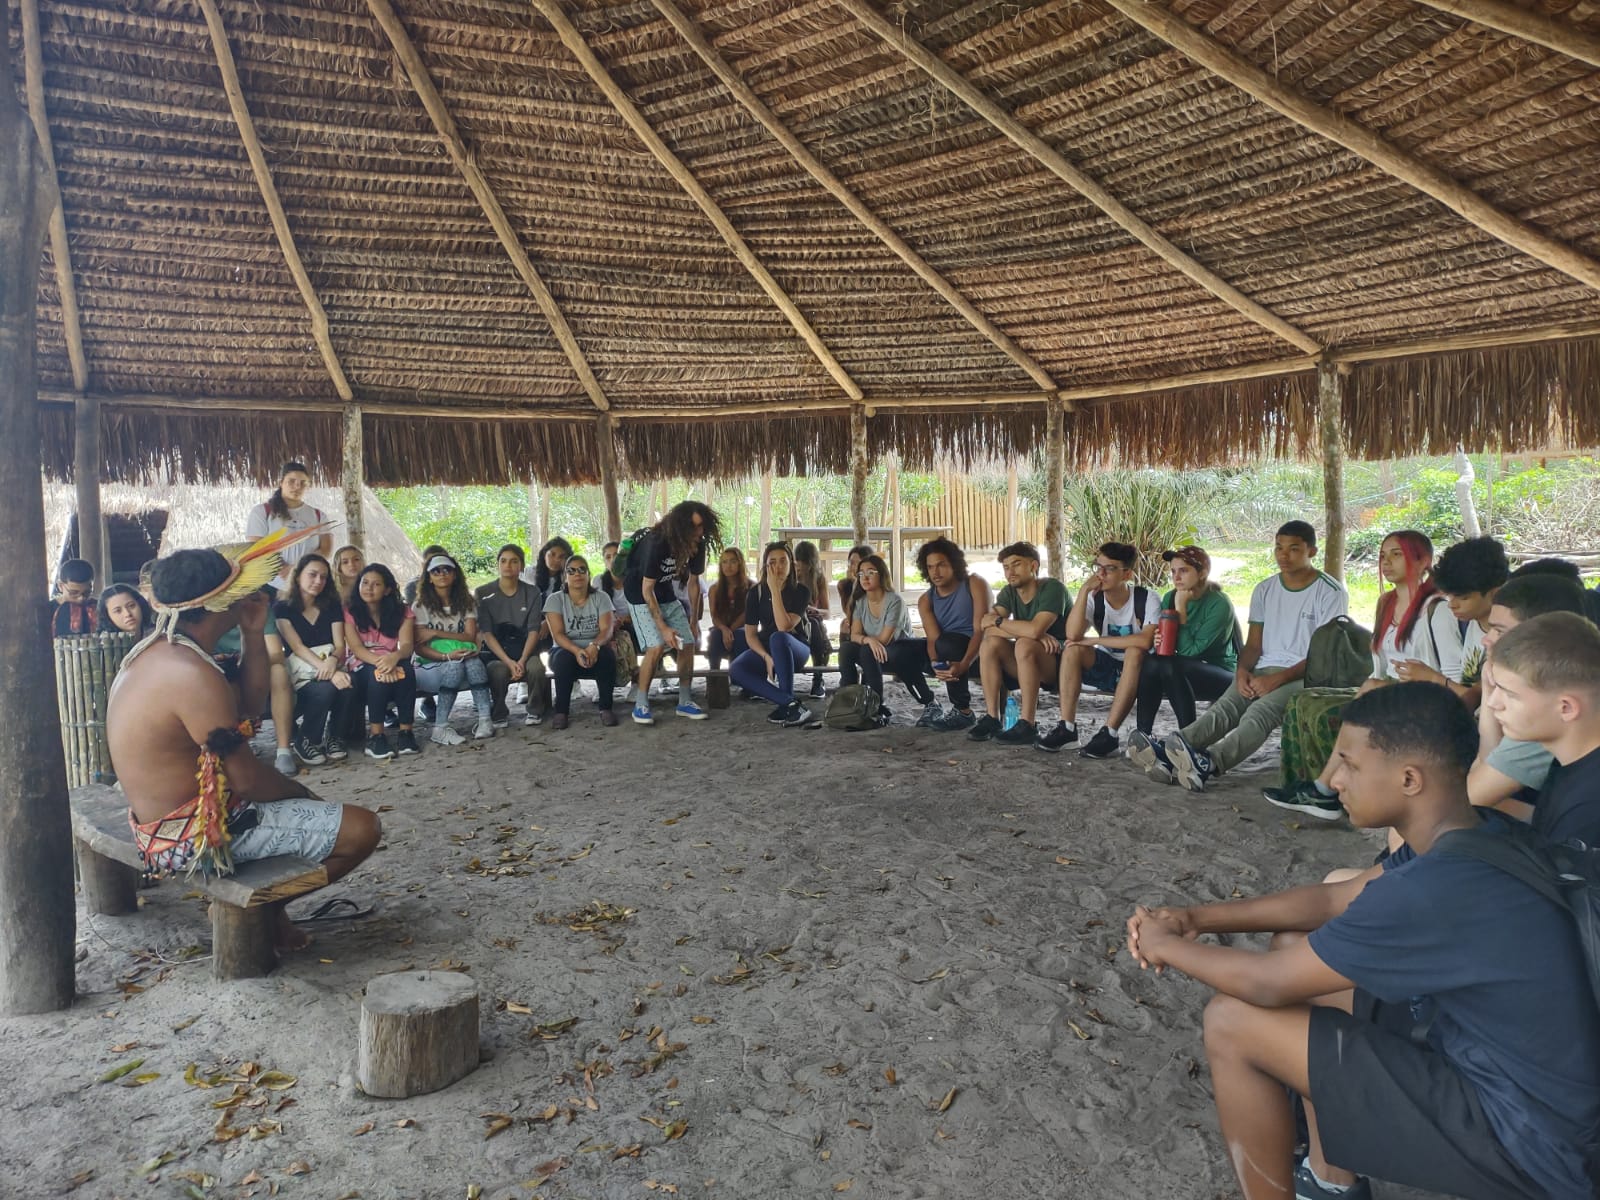 Estudantes e indígenas estão sentado e conversam em uma roda. Acima deles, há um telhado de palha.